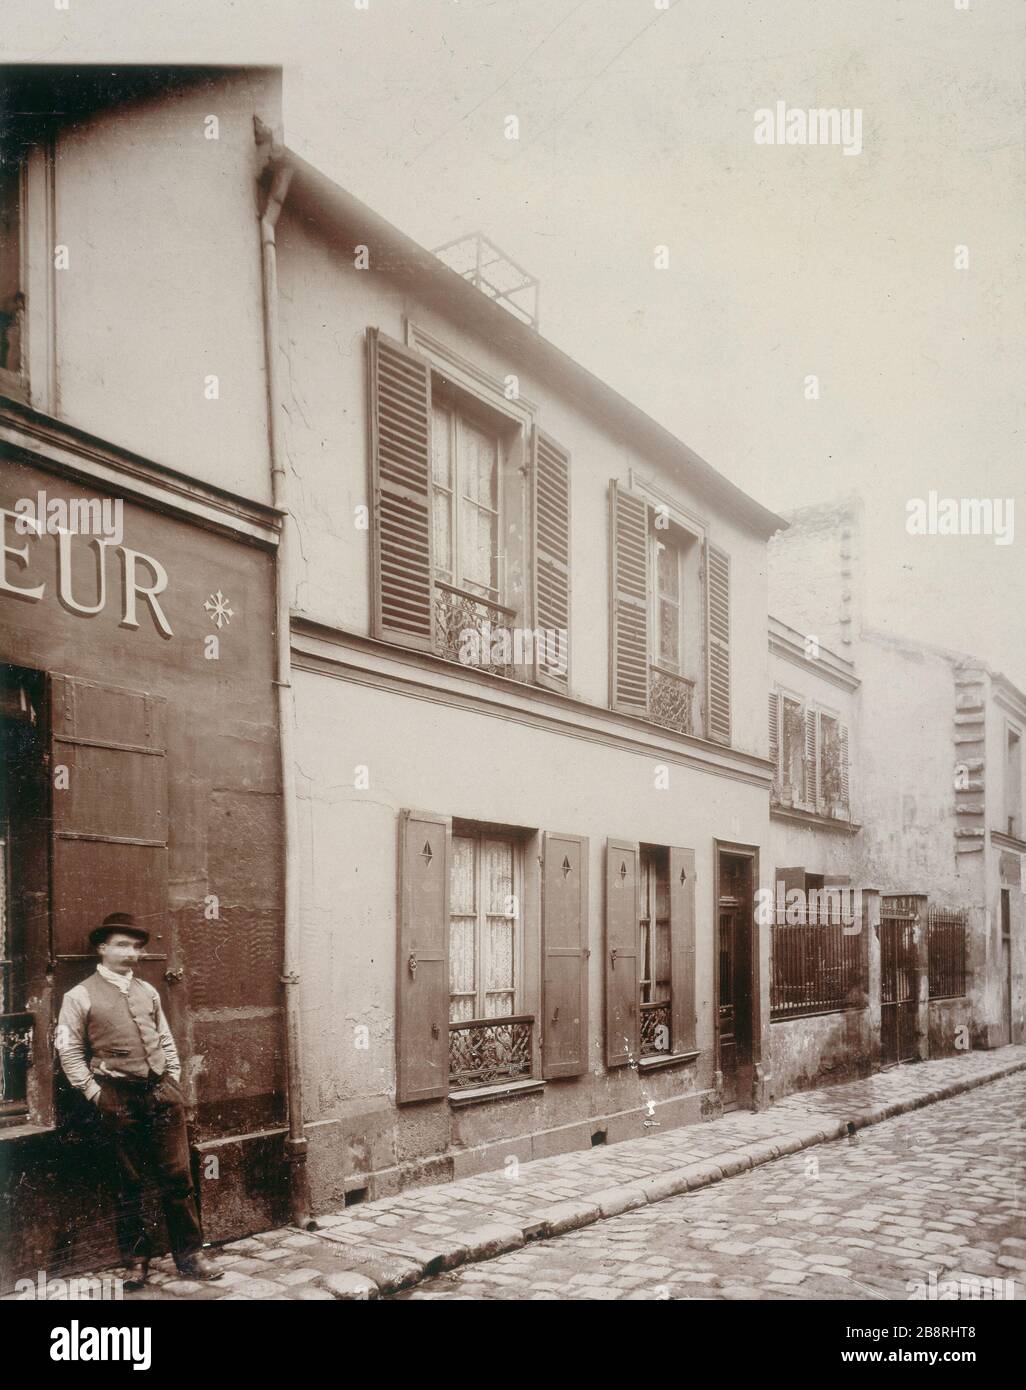 14 RUE PIAT 14, rue Piat. Paris (XXème arr.). Union Photographique Française, vers 1895. Paris, musée Carnavalet. Stock Photo